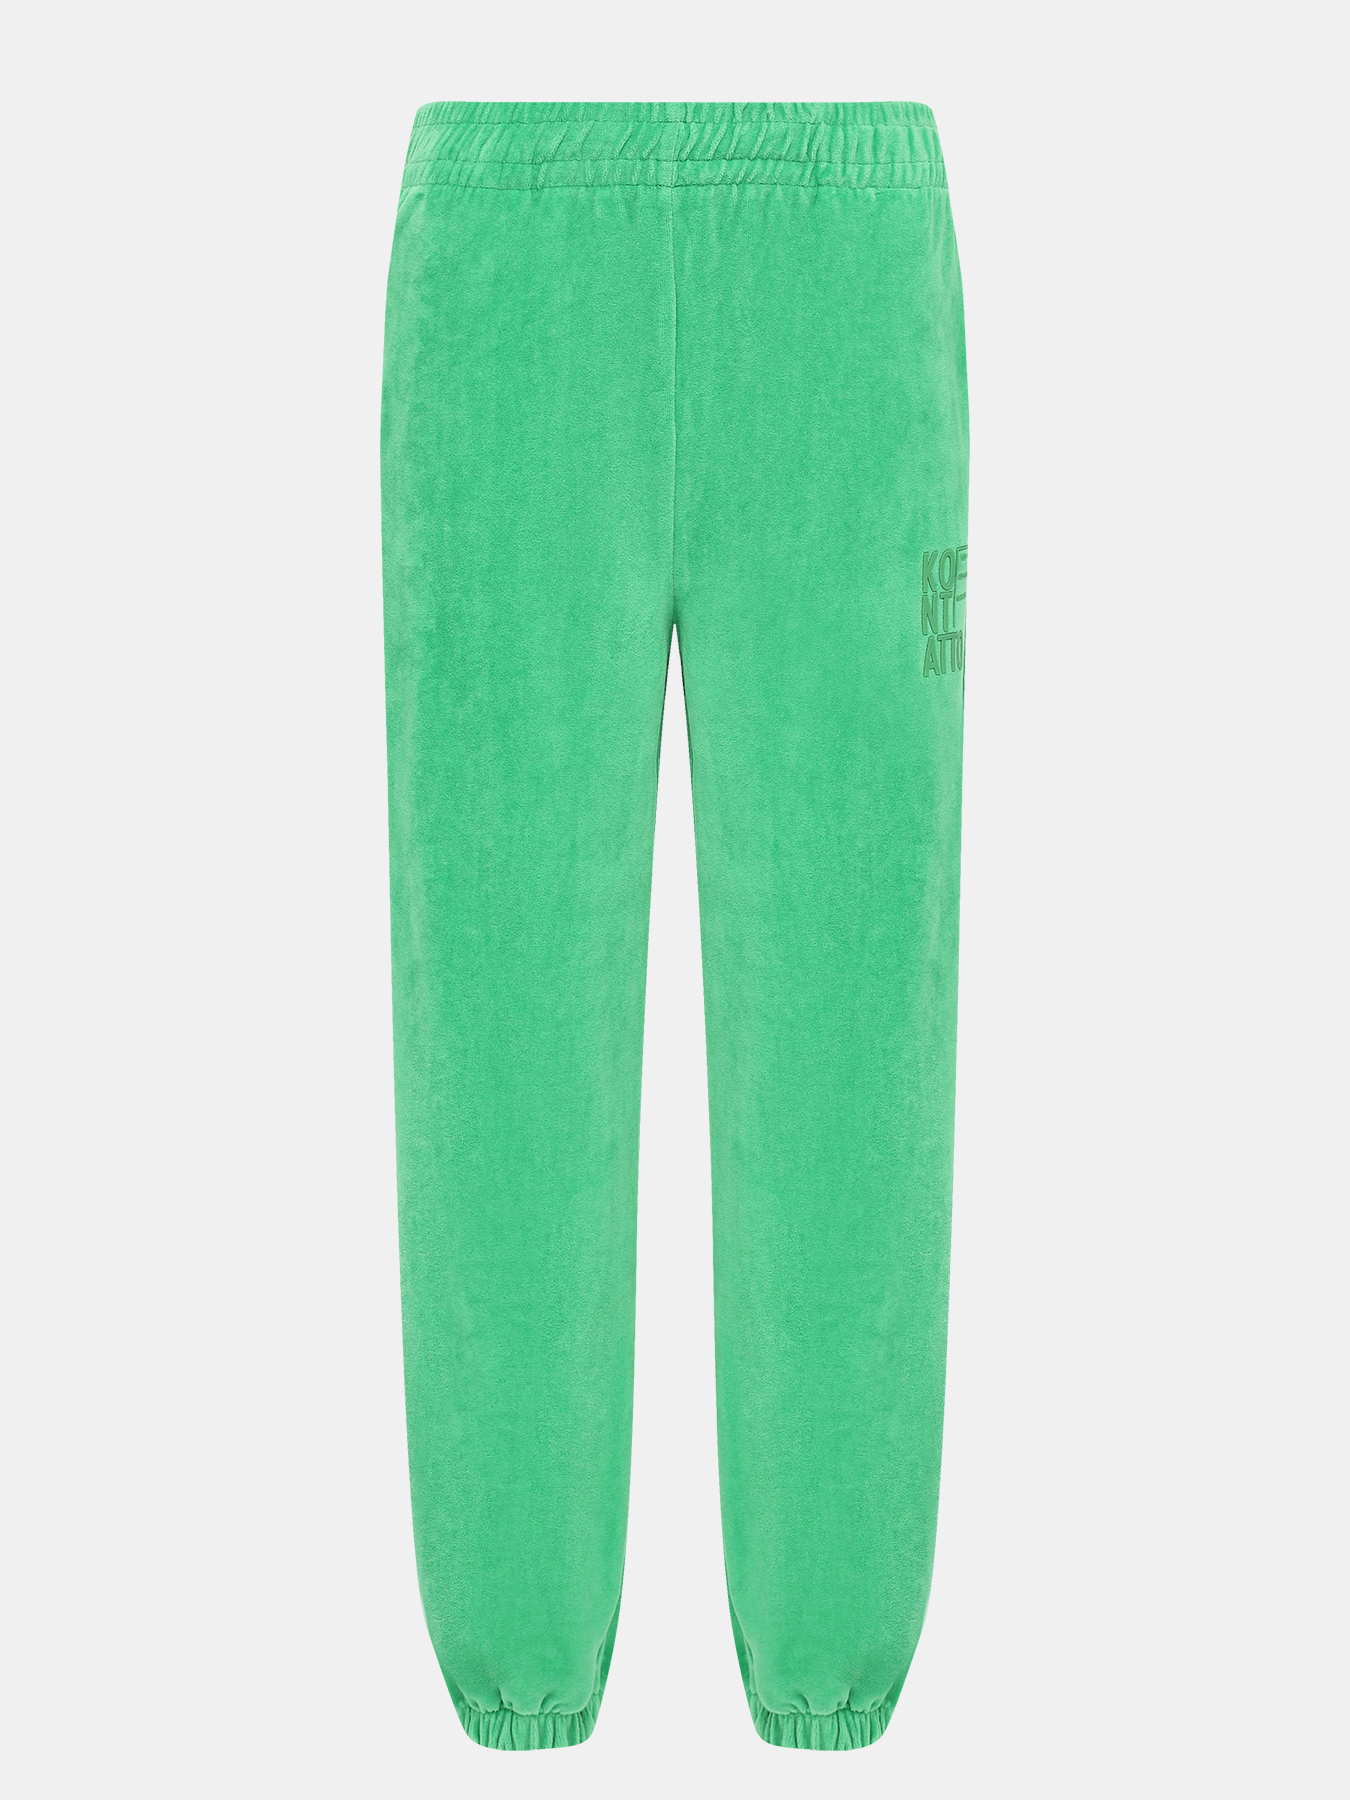 Спортивные брюки Kontatto 425478-043, цвет зеленый, размер 44-46